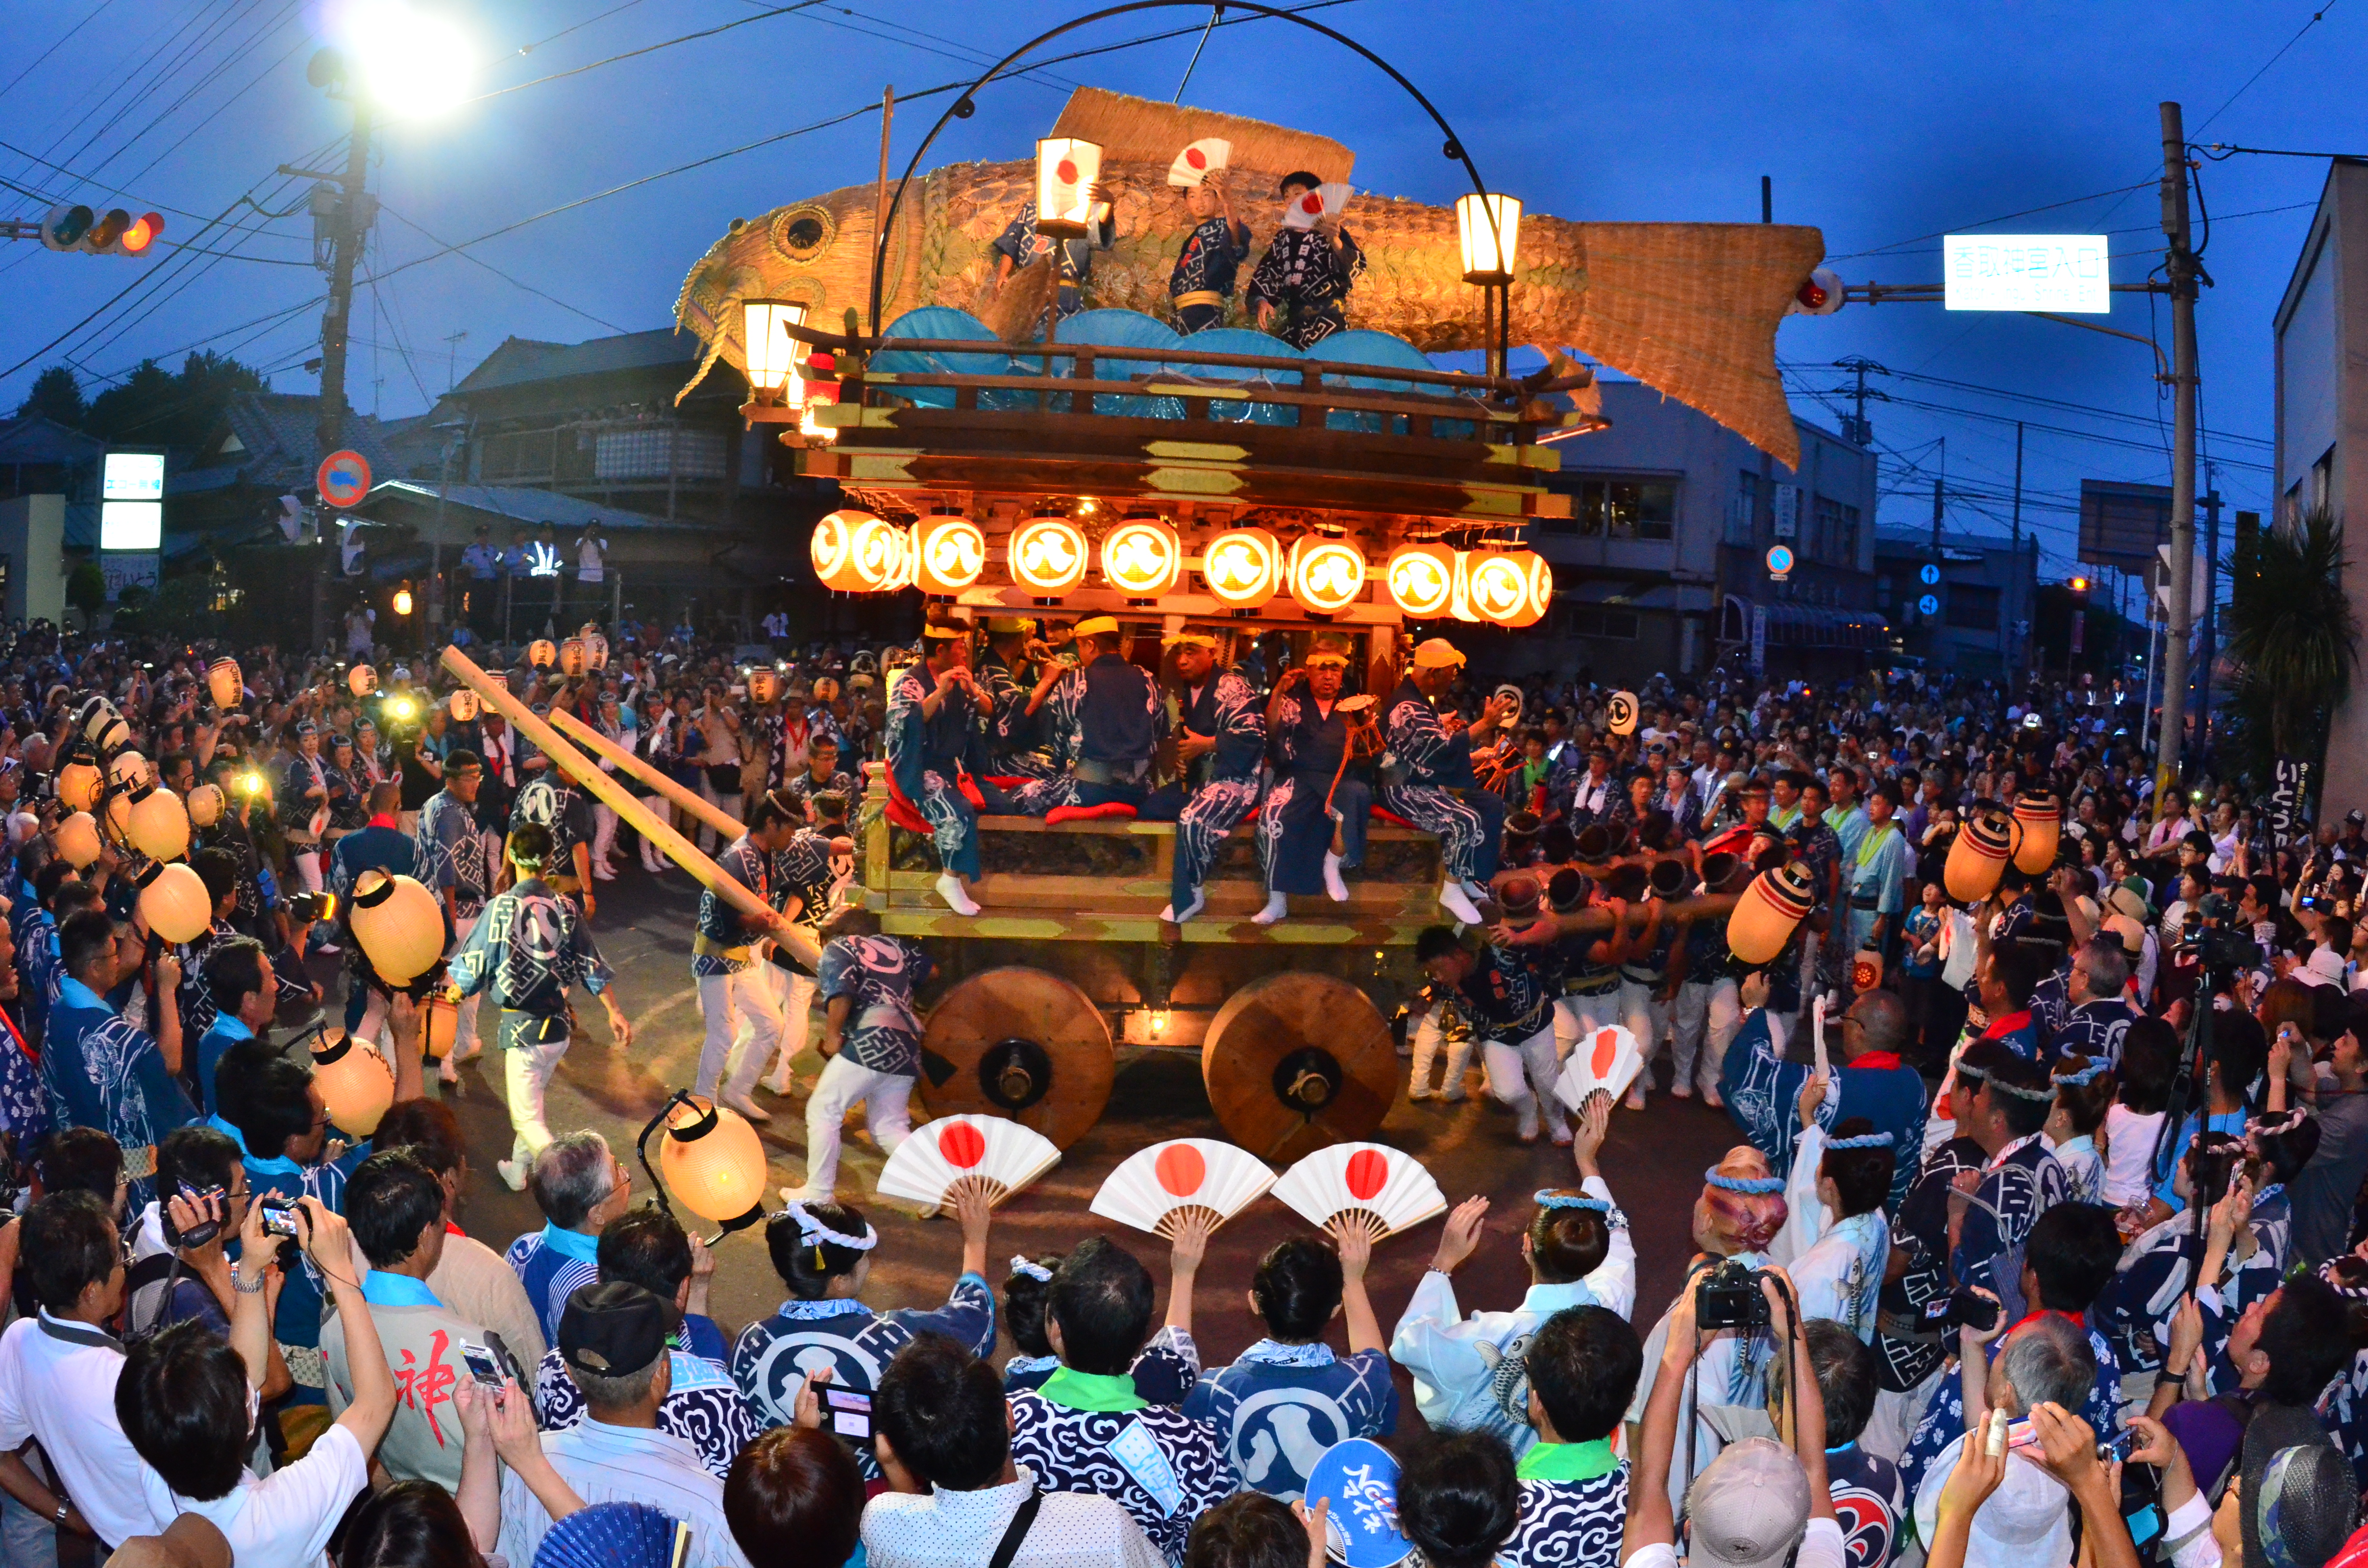 佐原的彩車儀式  八阪神社祗園祭(夏天)